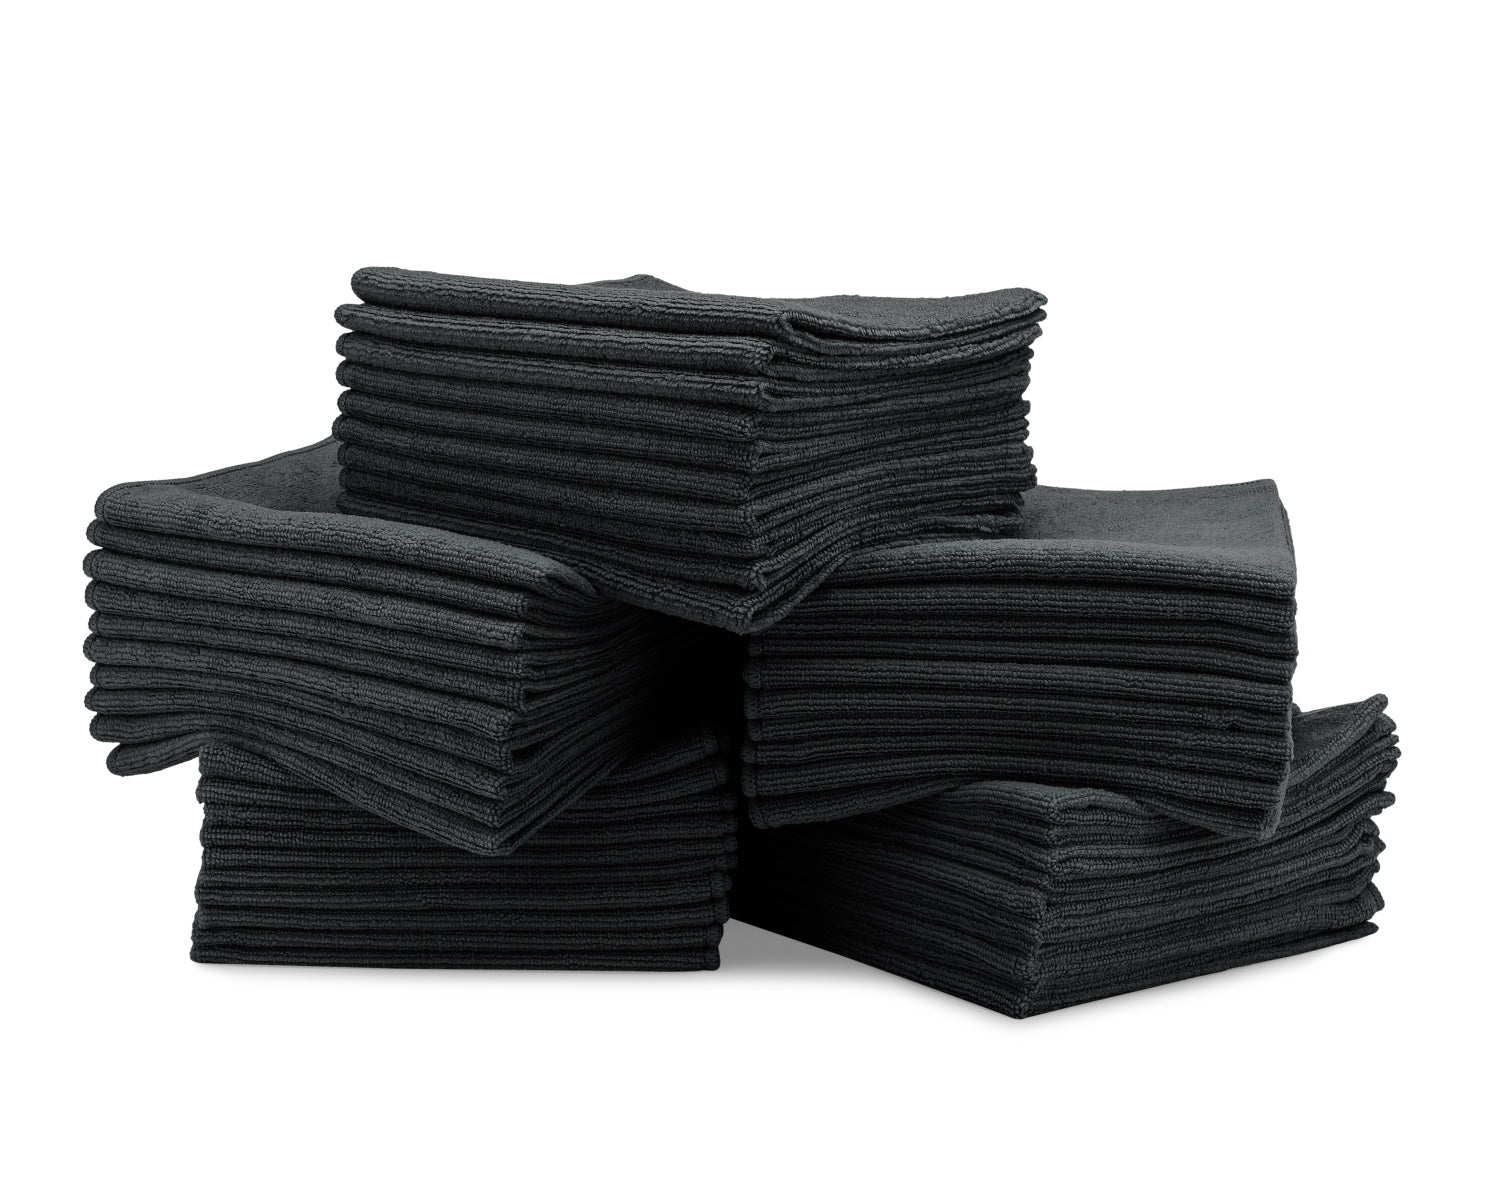 Microfiber Car Wash Towels (50 Pack)